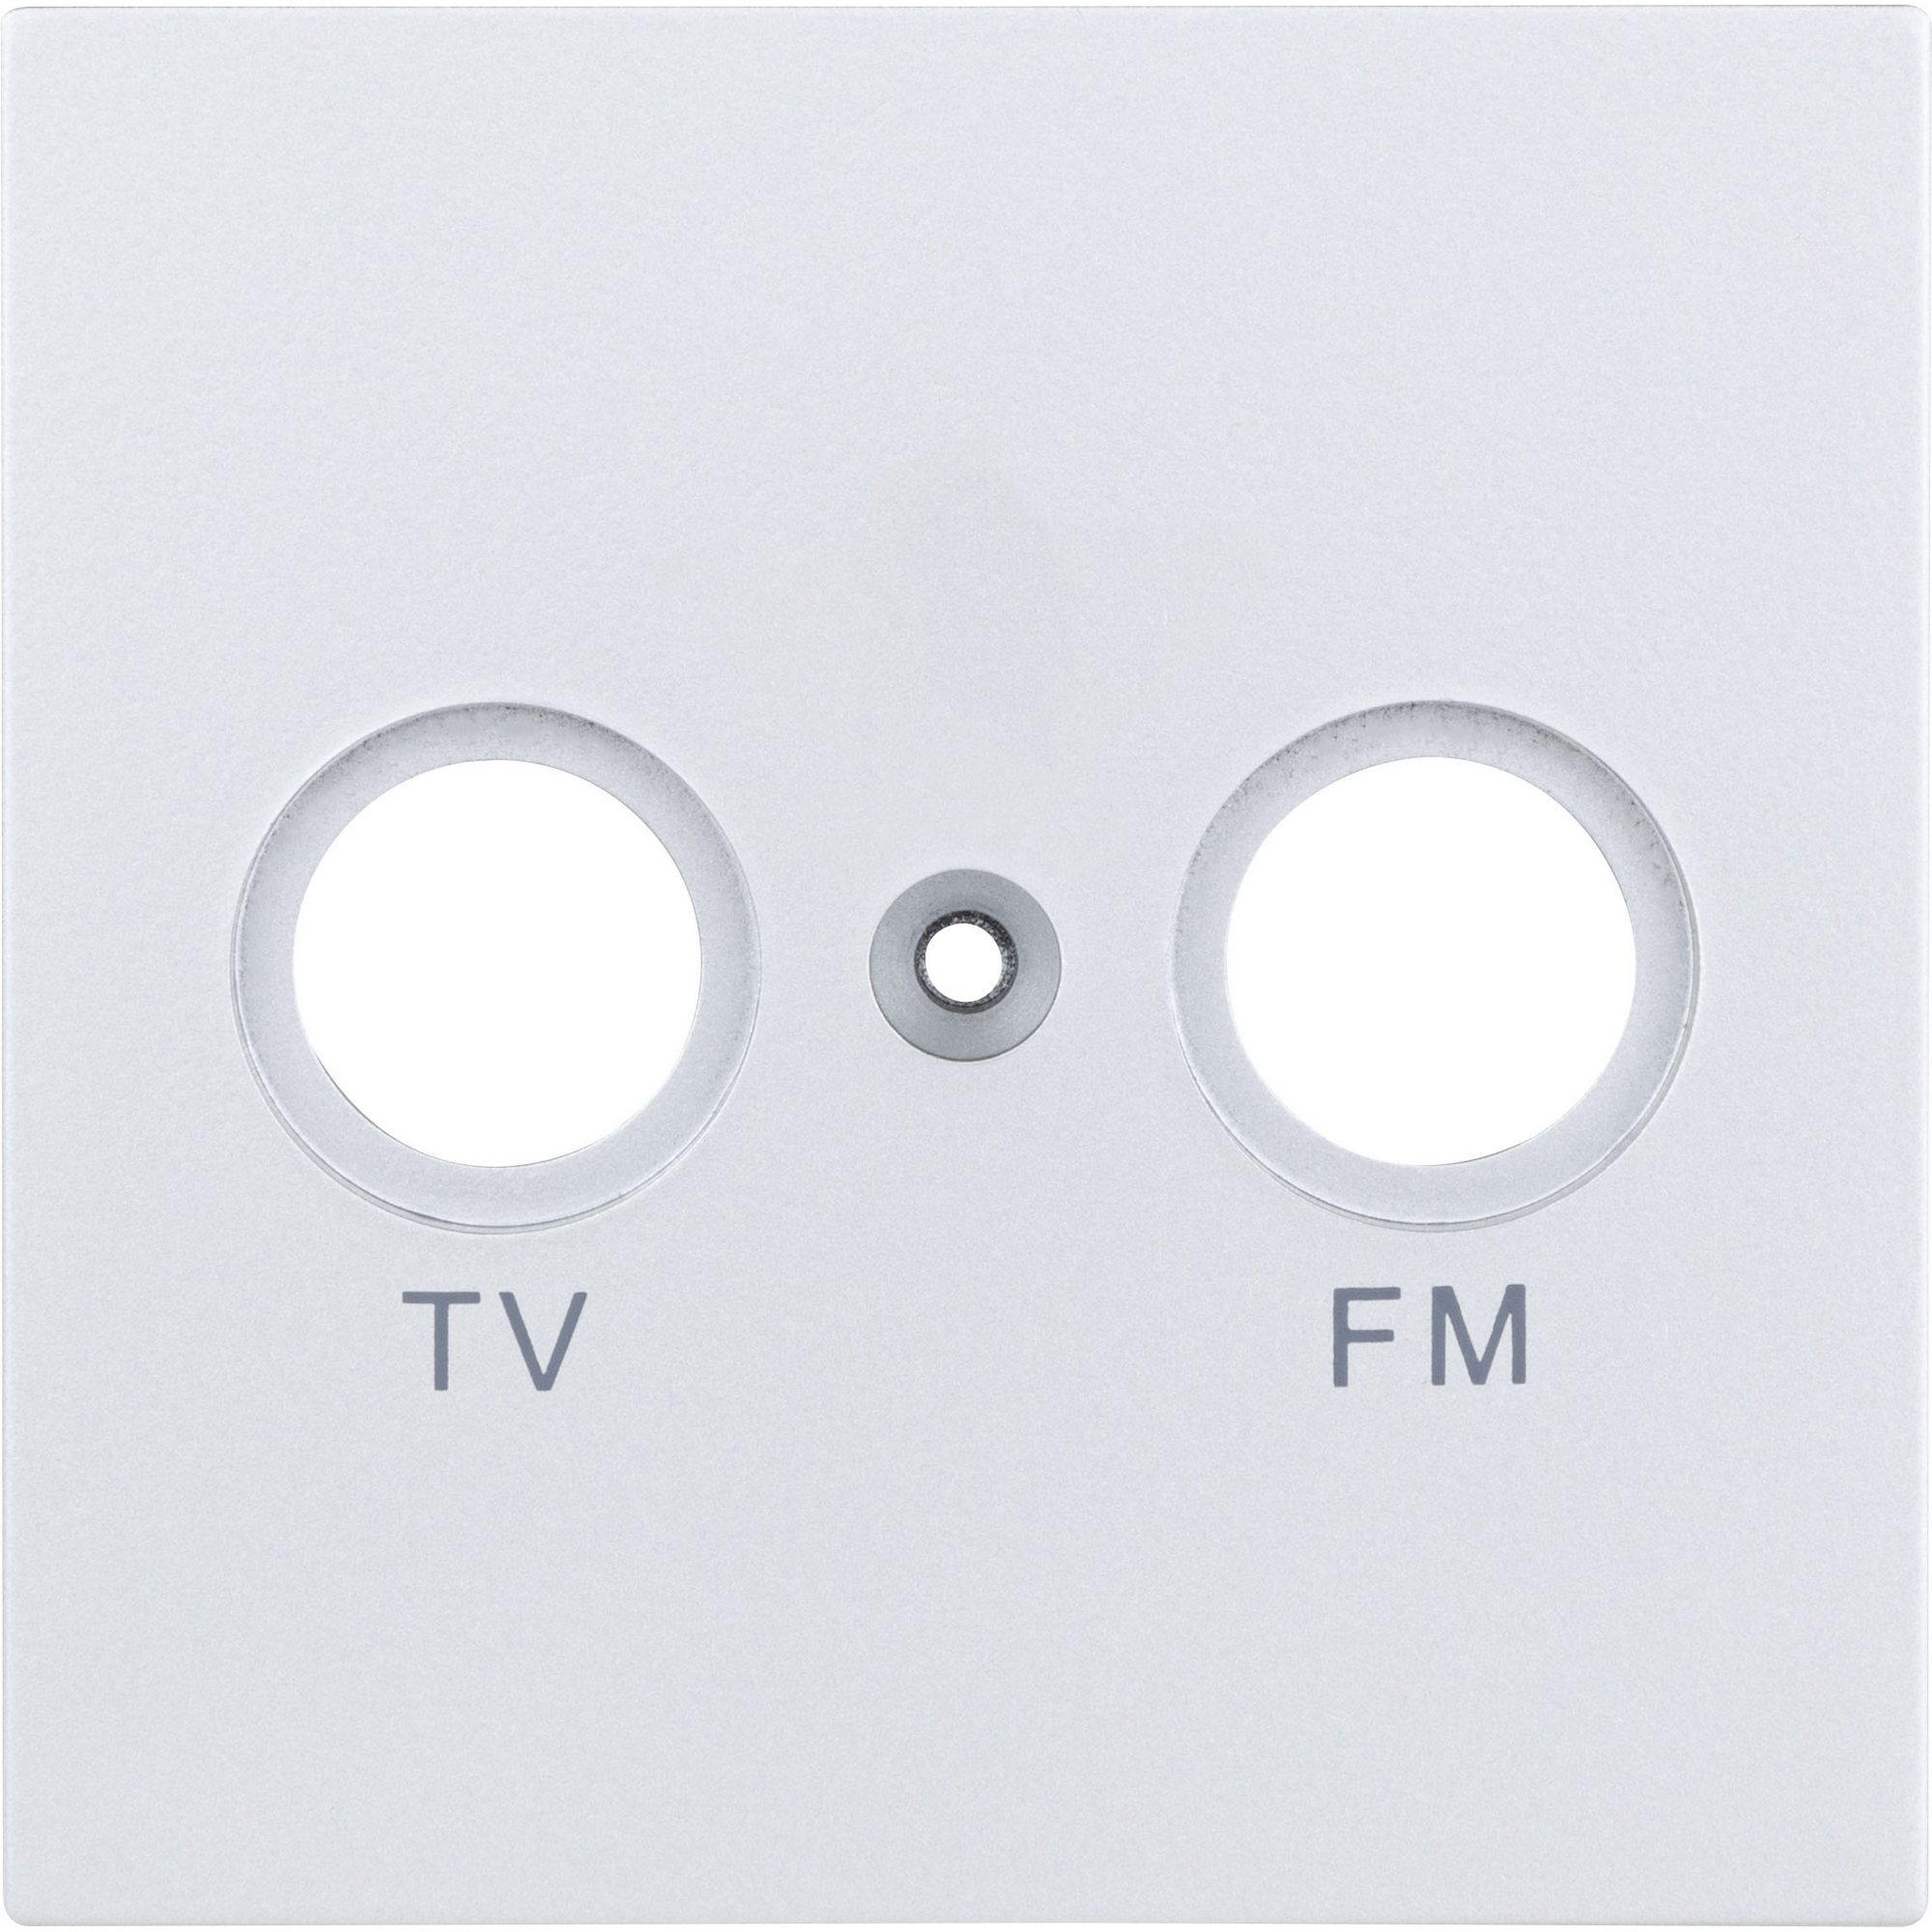 Abdeckung für Antennensteckdose 'Designline' TV/RV silbern + product picture